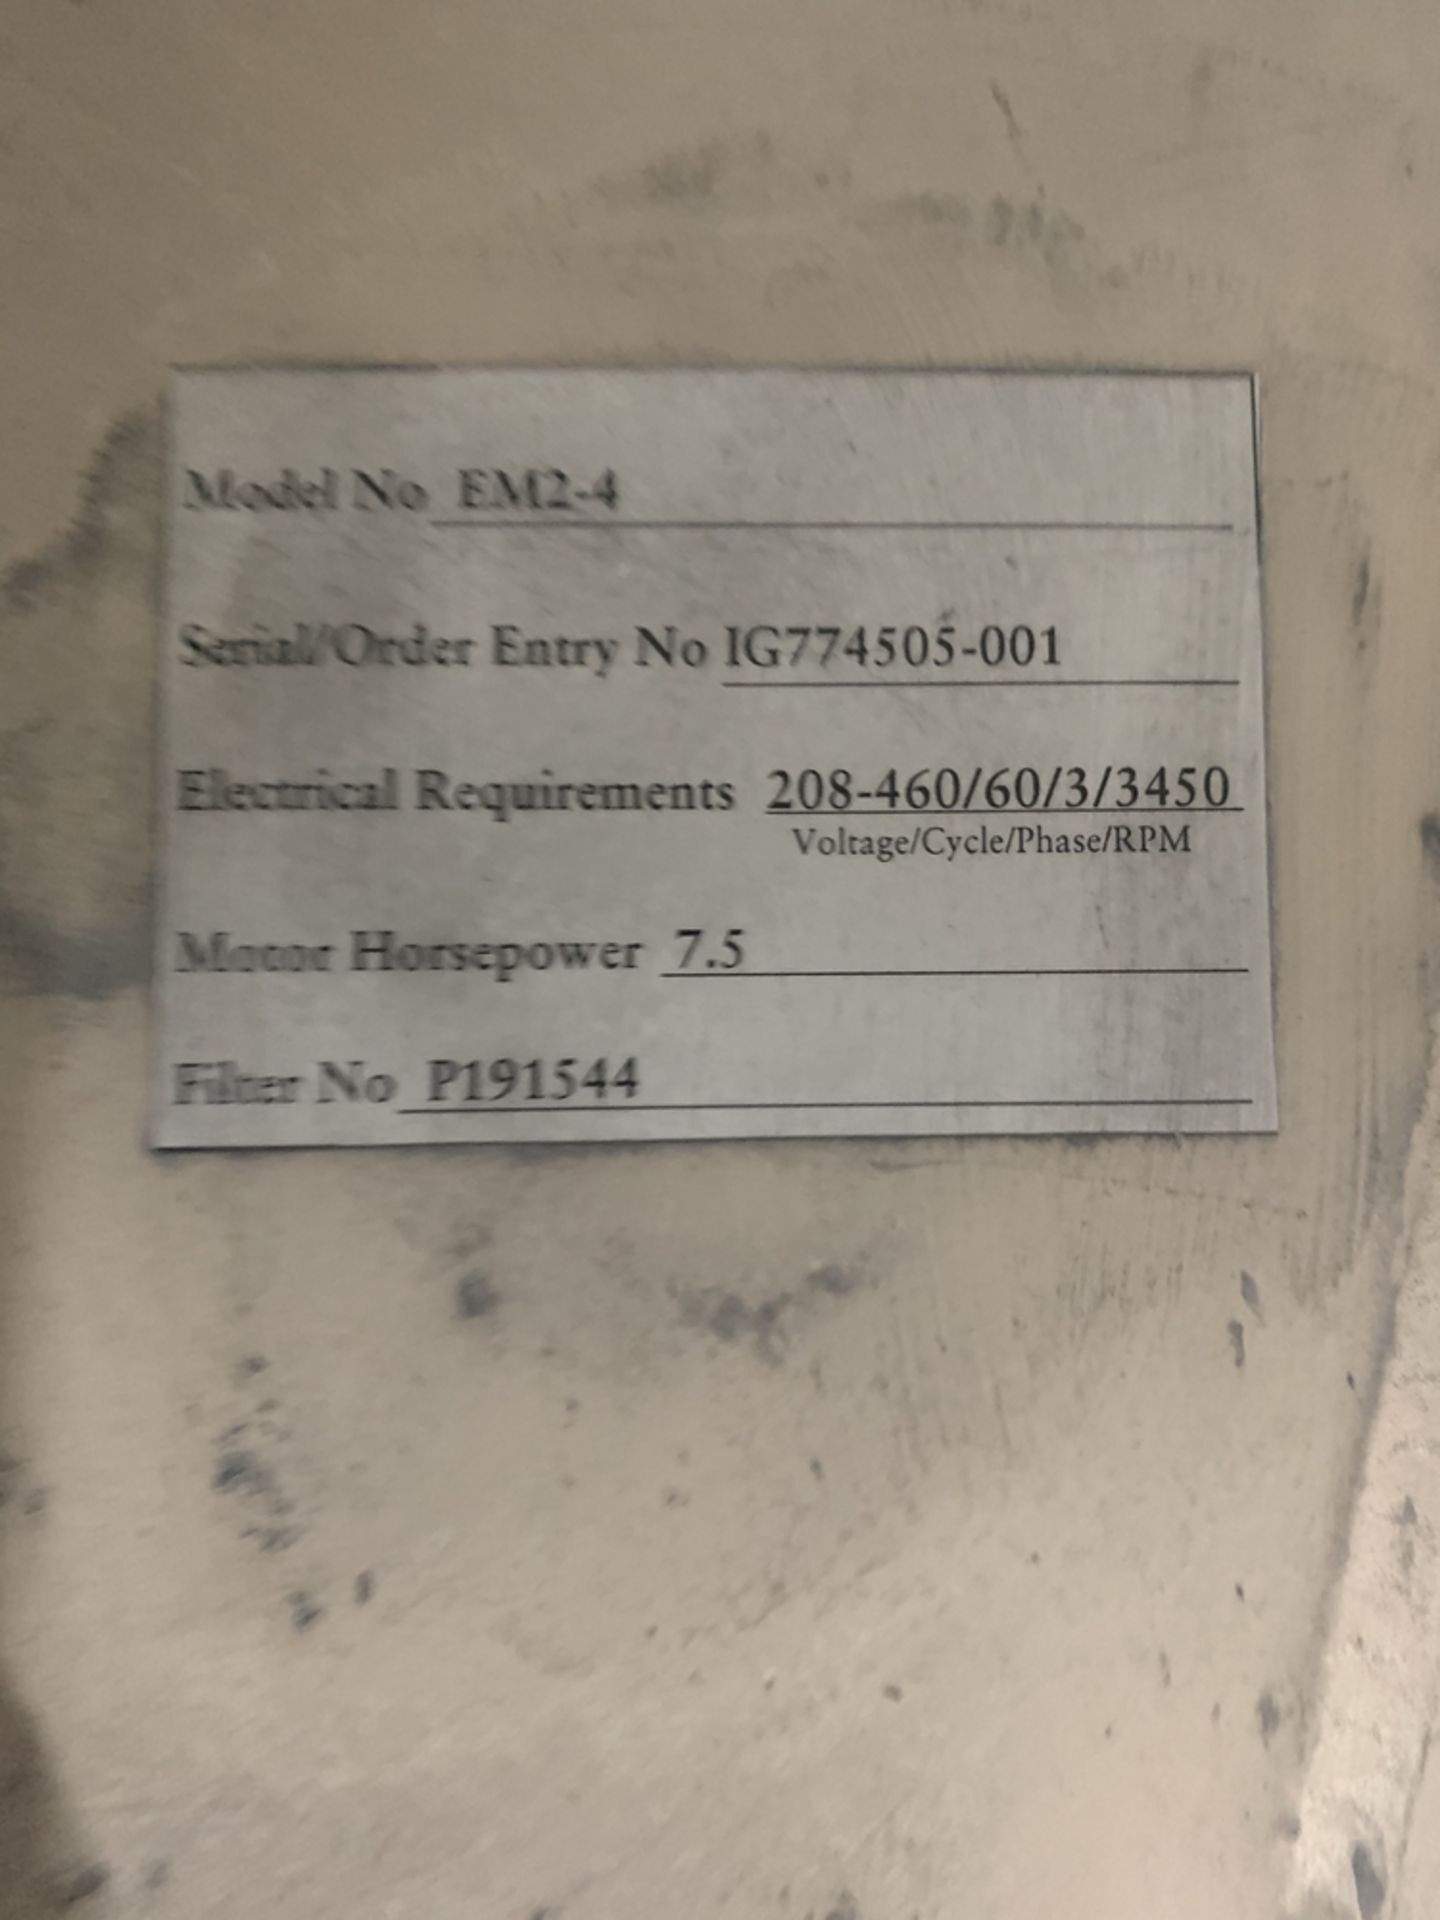 DONALDSON TORIT EM2-4 Dust Collector, s/n IG774505-001 BLDG #17 - Image 2 of 2